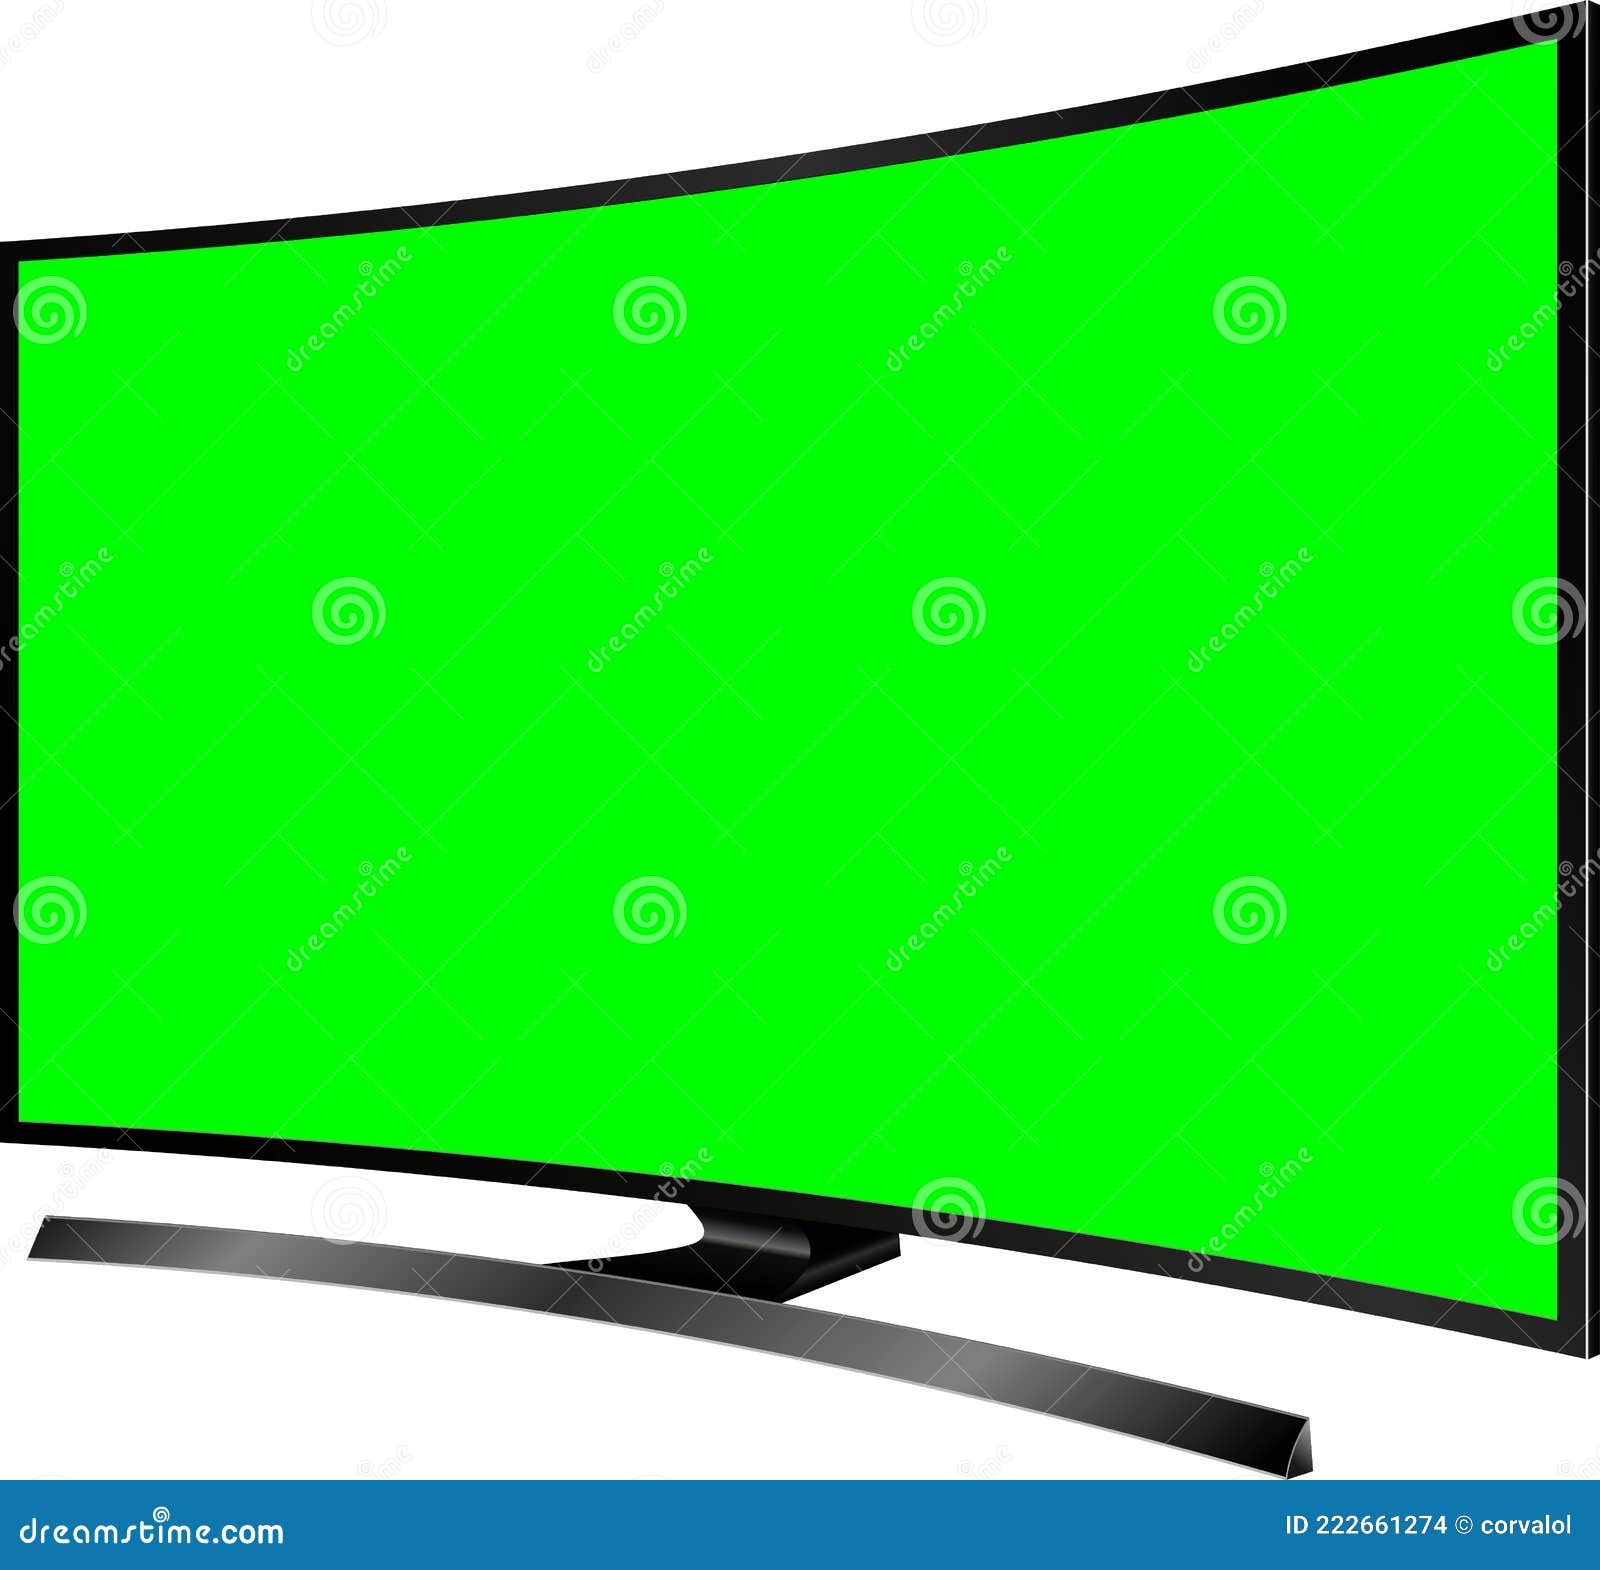 TV LCD Screen Mockup là một công cụ hiệu quả để trình bày các thiết kế của bạn cho khách hàng. Với kiểu dáng hiện đại, giao diện trực quan và tính tương thích cao, bạn có thể dễ dàng giới thiệu và trình bày các sản phẩm của mình cho khách hàng.